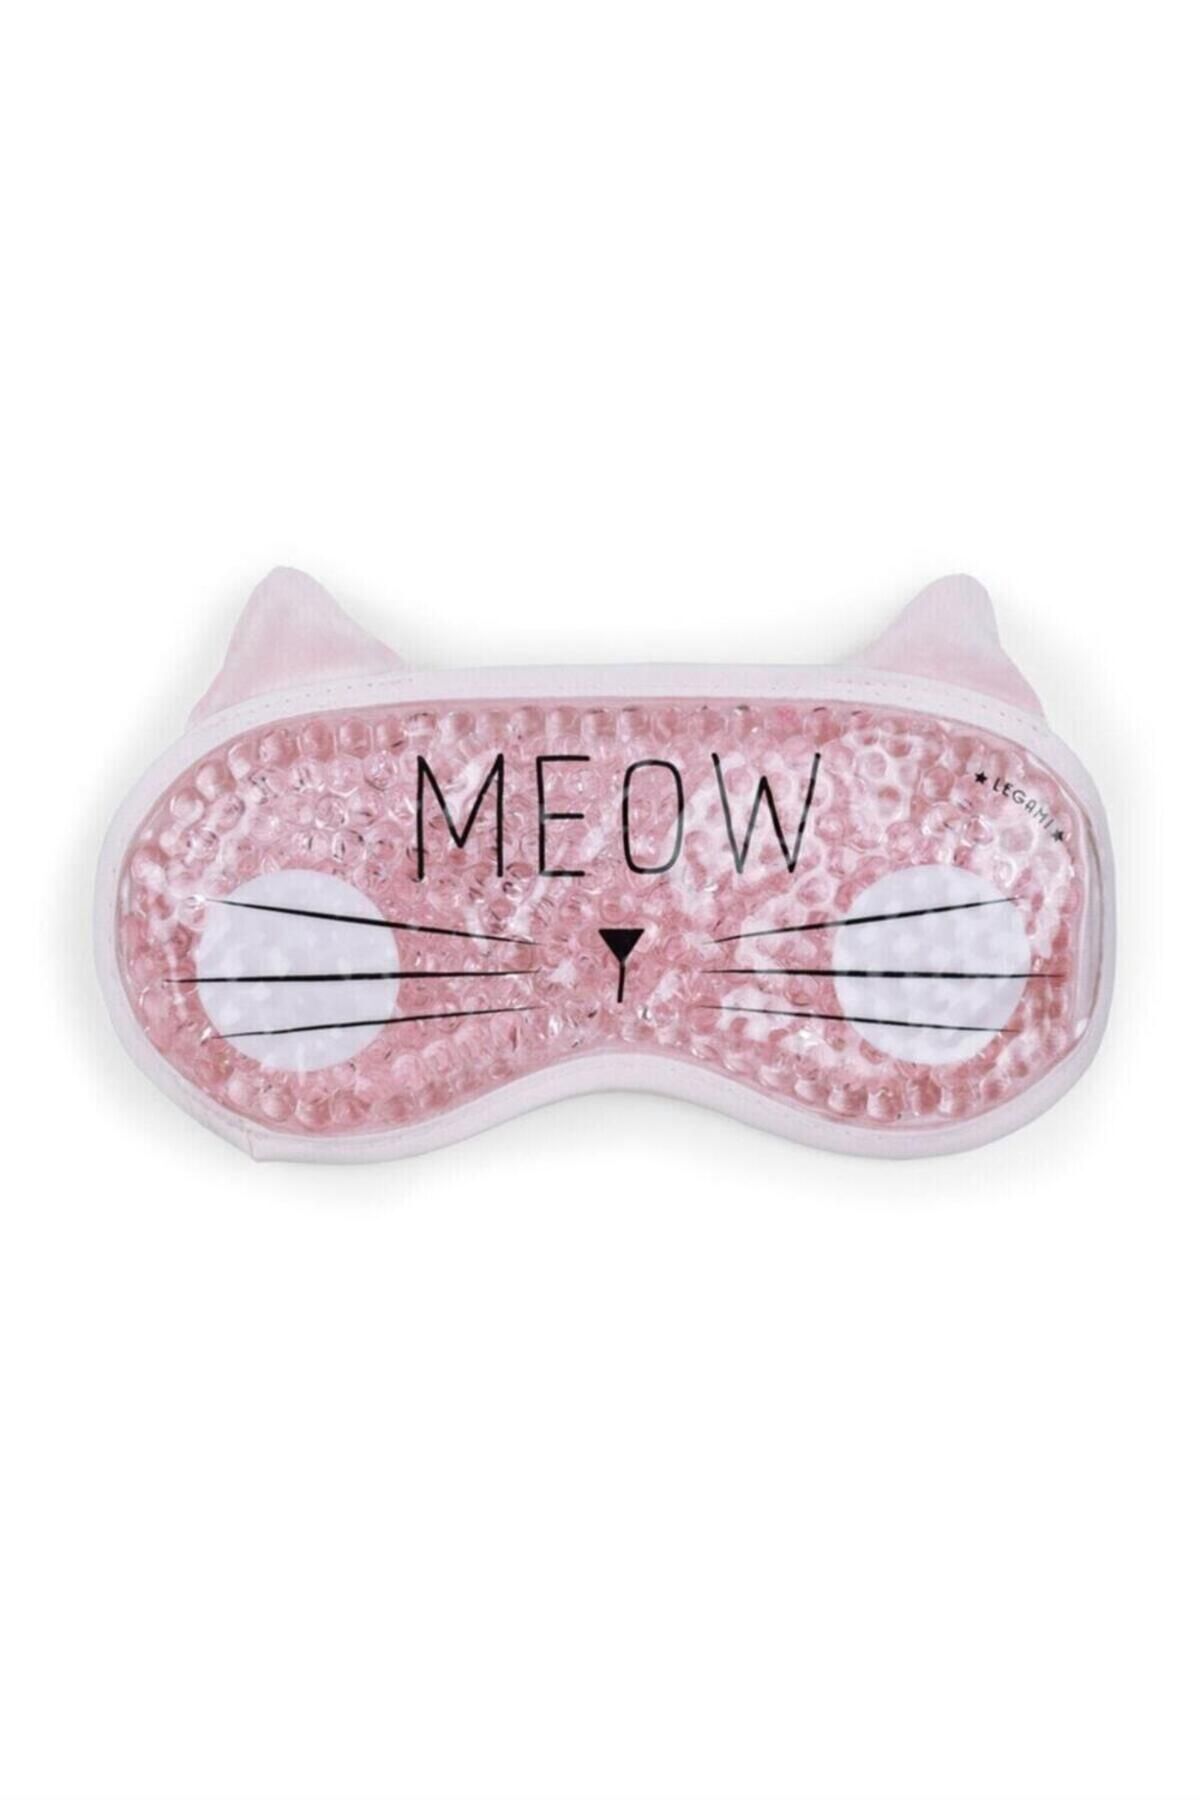 Legami Meow Chıll Out Jel Uyku Maskesi